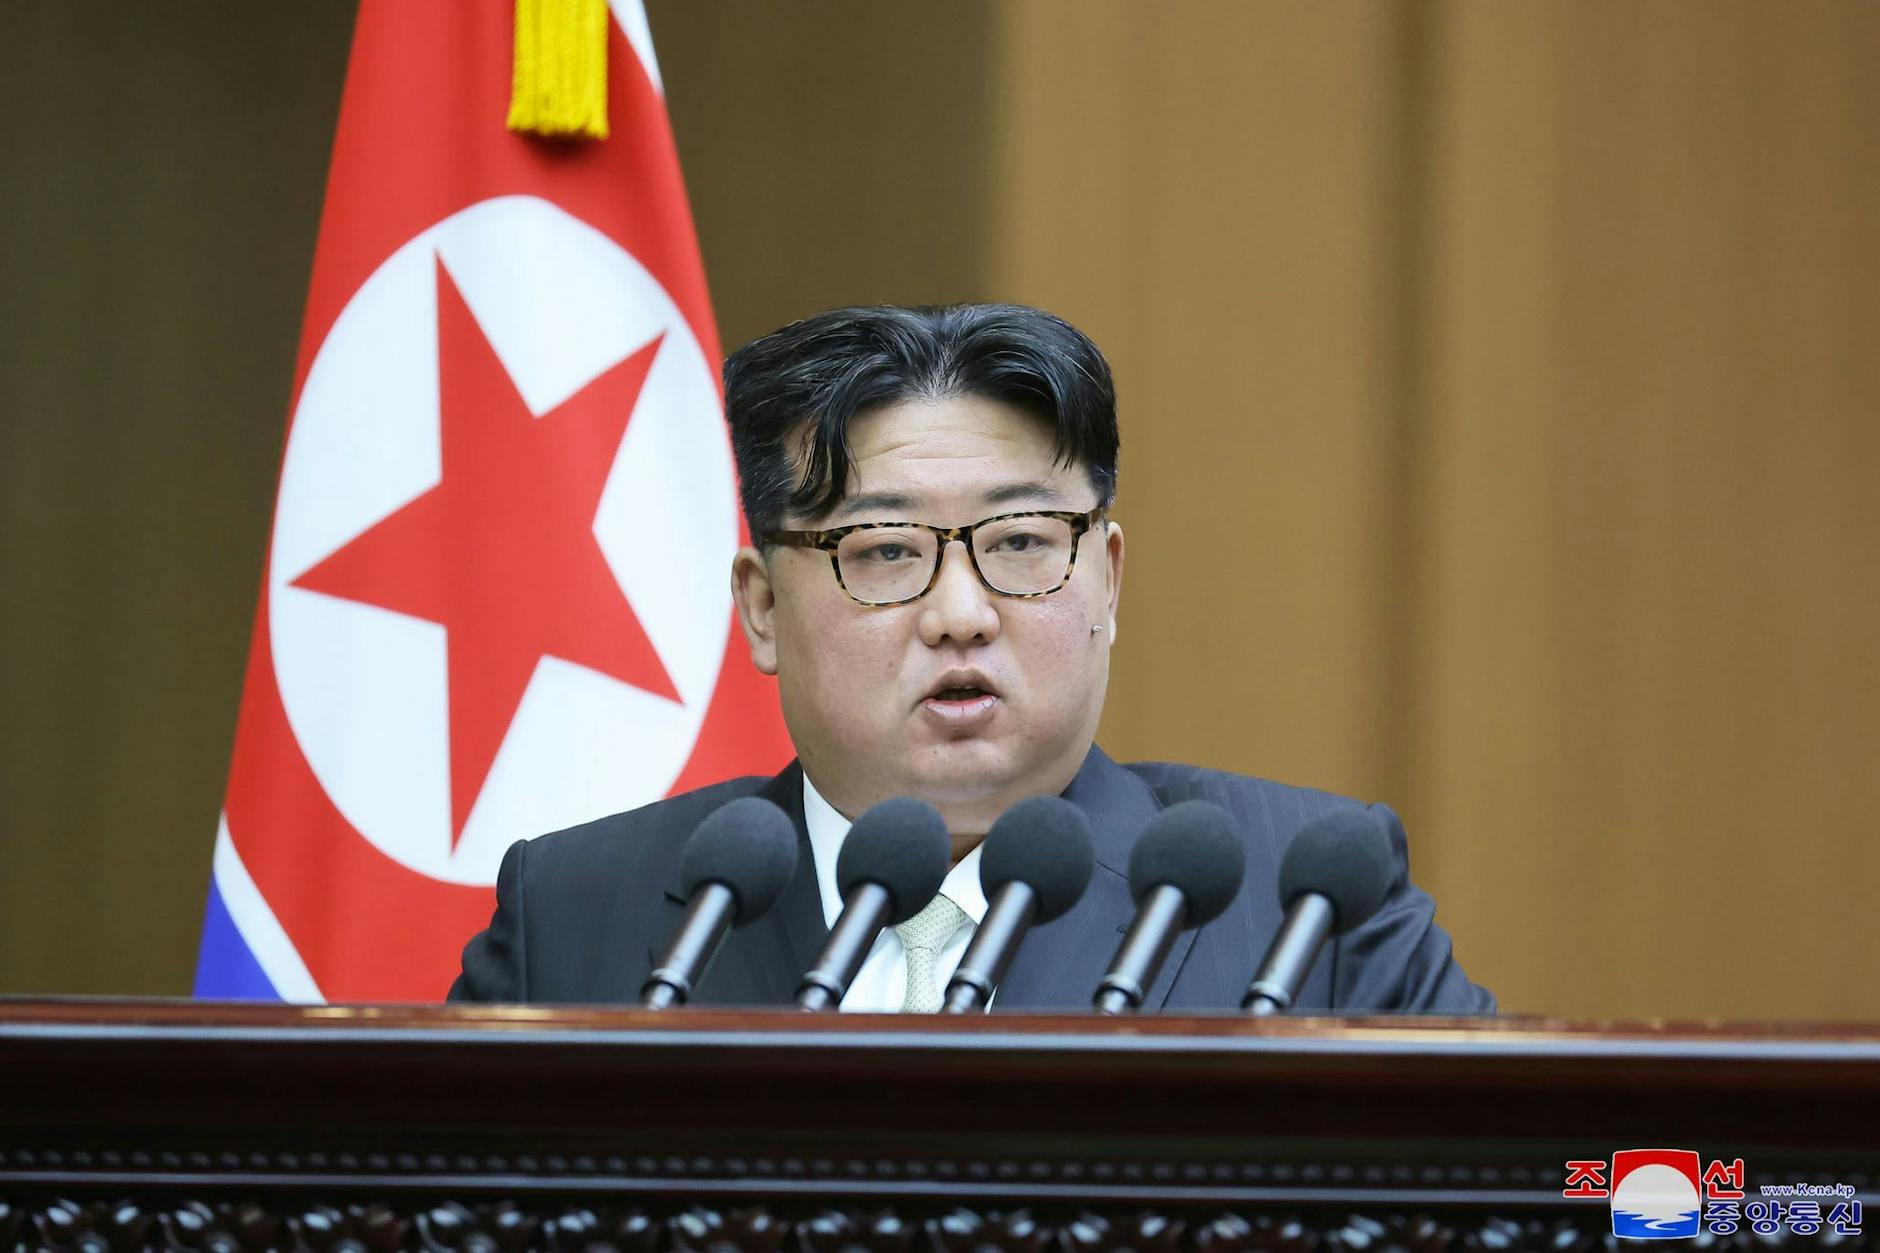 Nordkoreas Machthaber <a href="https://www.berliner-zeitung.de/topics/kim-jong-un">Kim Jong-un</a>. Die Situation auf der koreanischen Halbinsel ist so angespannt wie seit Jahren nicht mehr.